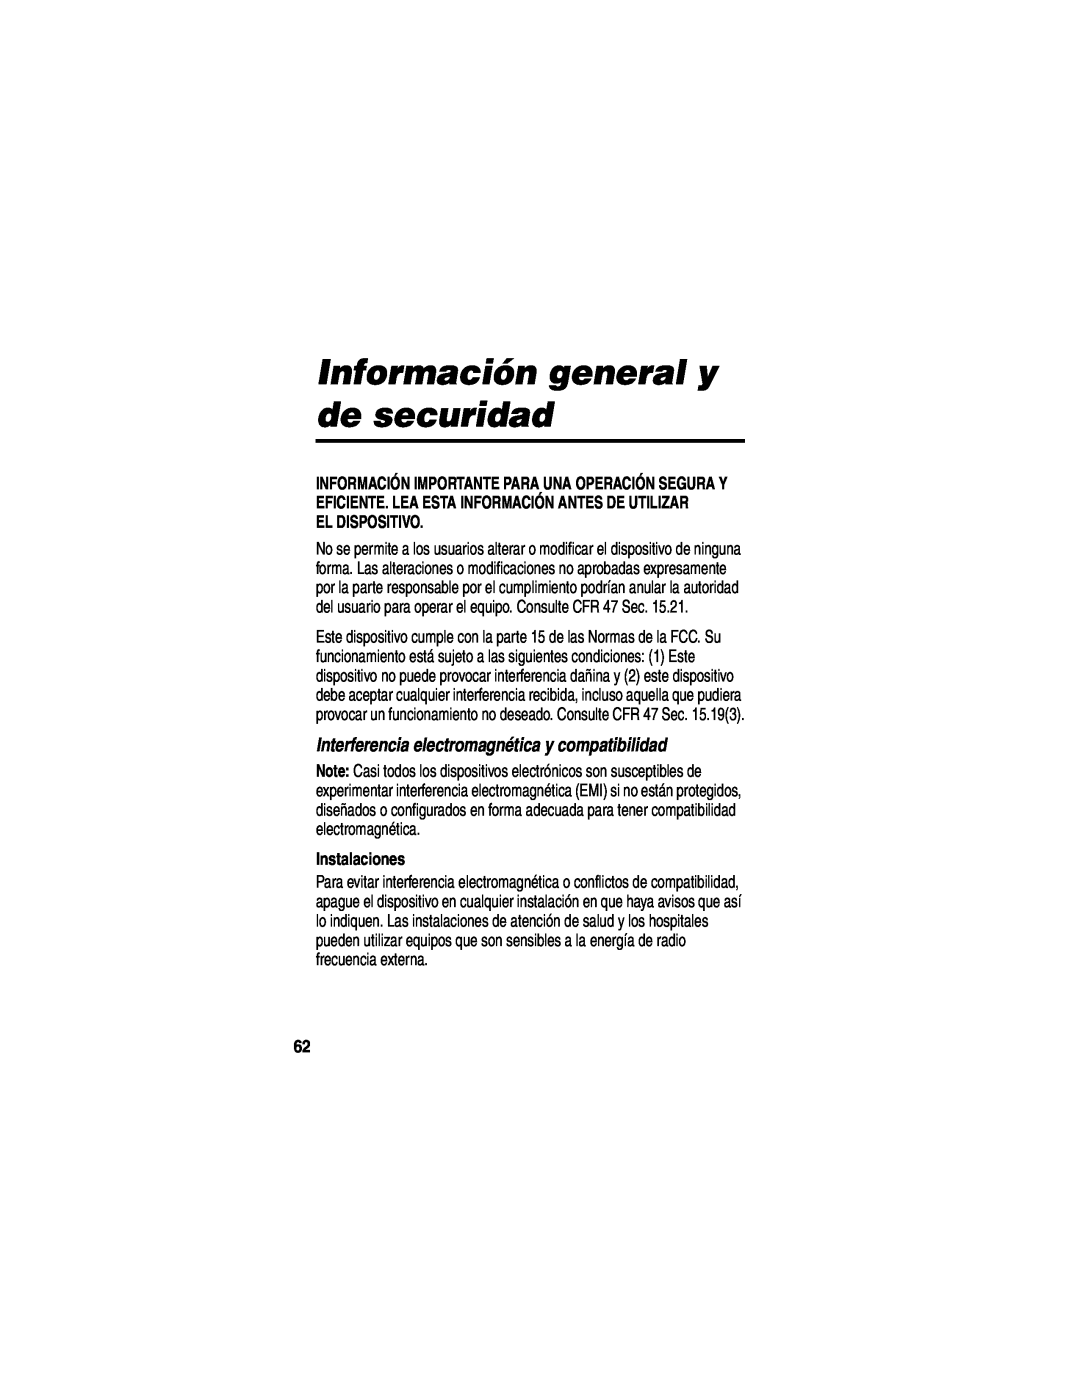 Motorola HF850 manual Información general y de securidad, Interferencia electromagnética y compatibilidad, El Dispositivo 